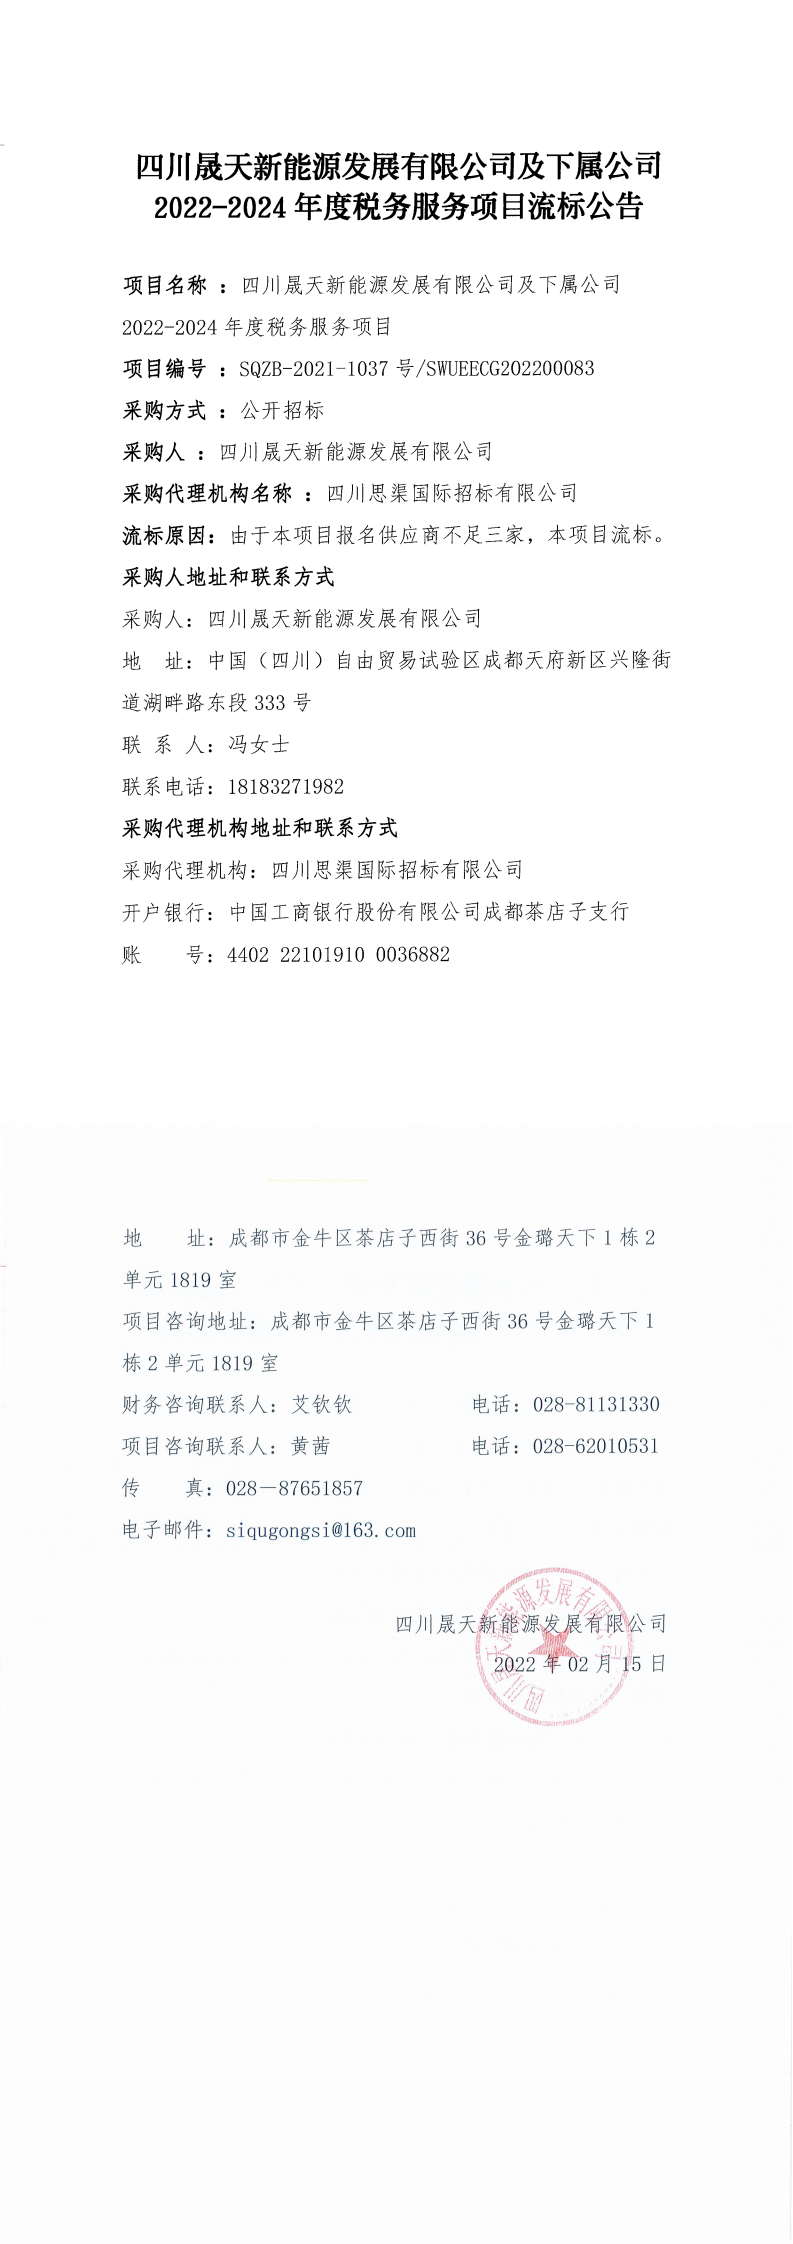 四川晟天新能源发展有限公司及下属公司2022-2024年度税务服务项目流标公告_0.png